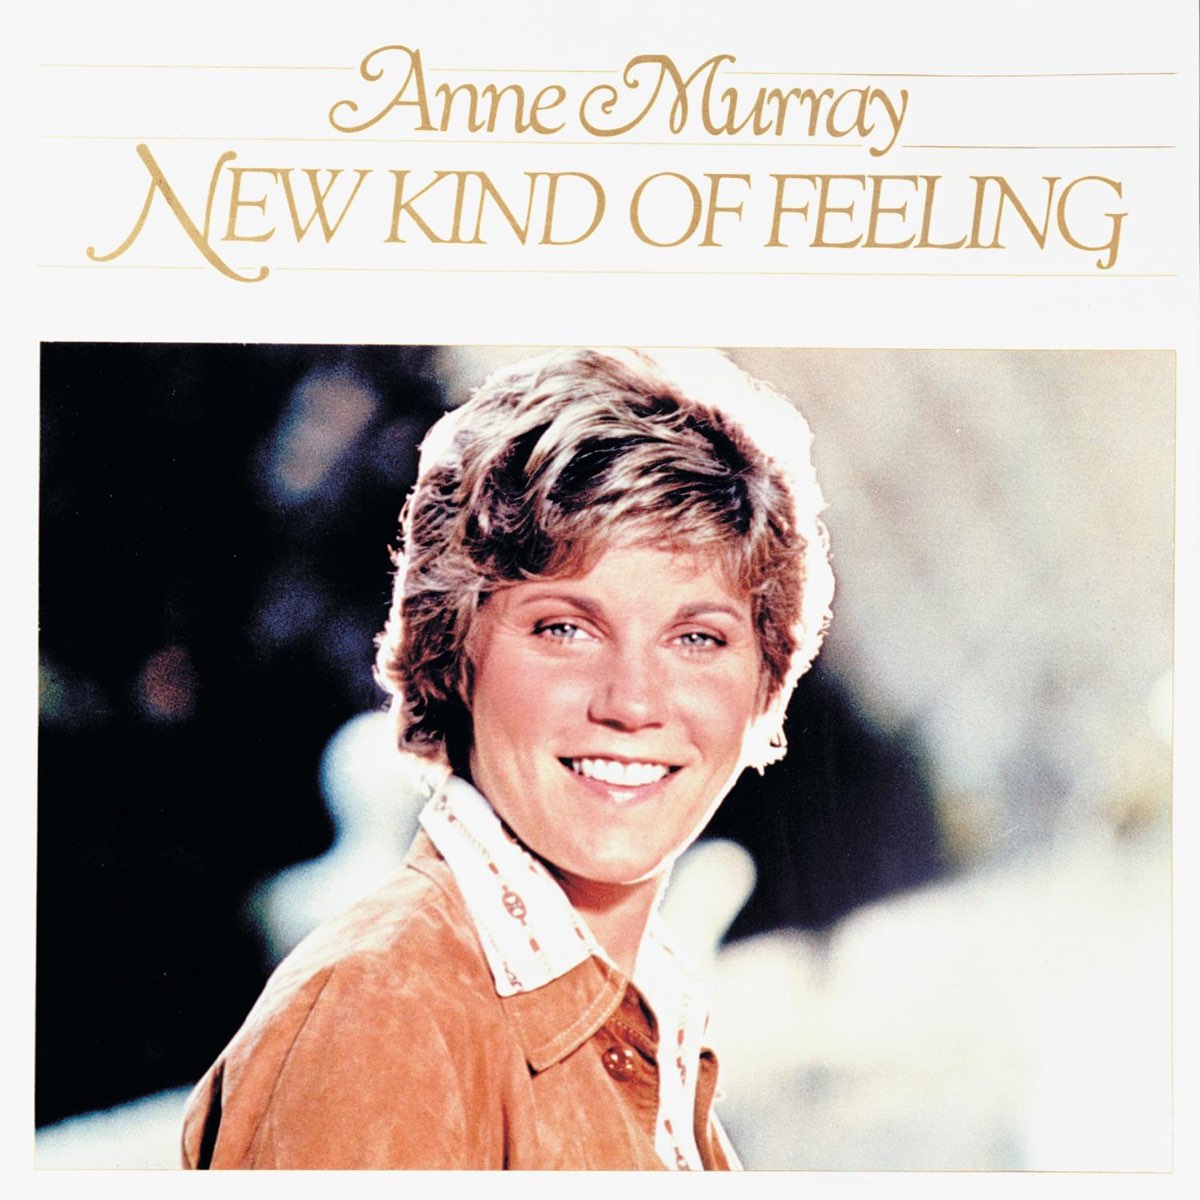 That kind of feeling. Anne Murray. Anne Murray - 1978 - New kind of feeling album. Anne Murray - 1974 - Country album. Anne Murray "Annie".